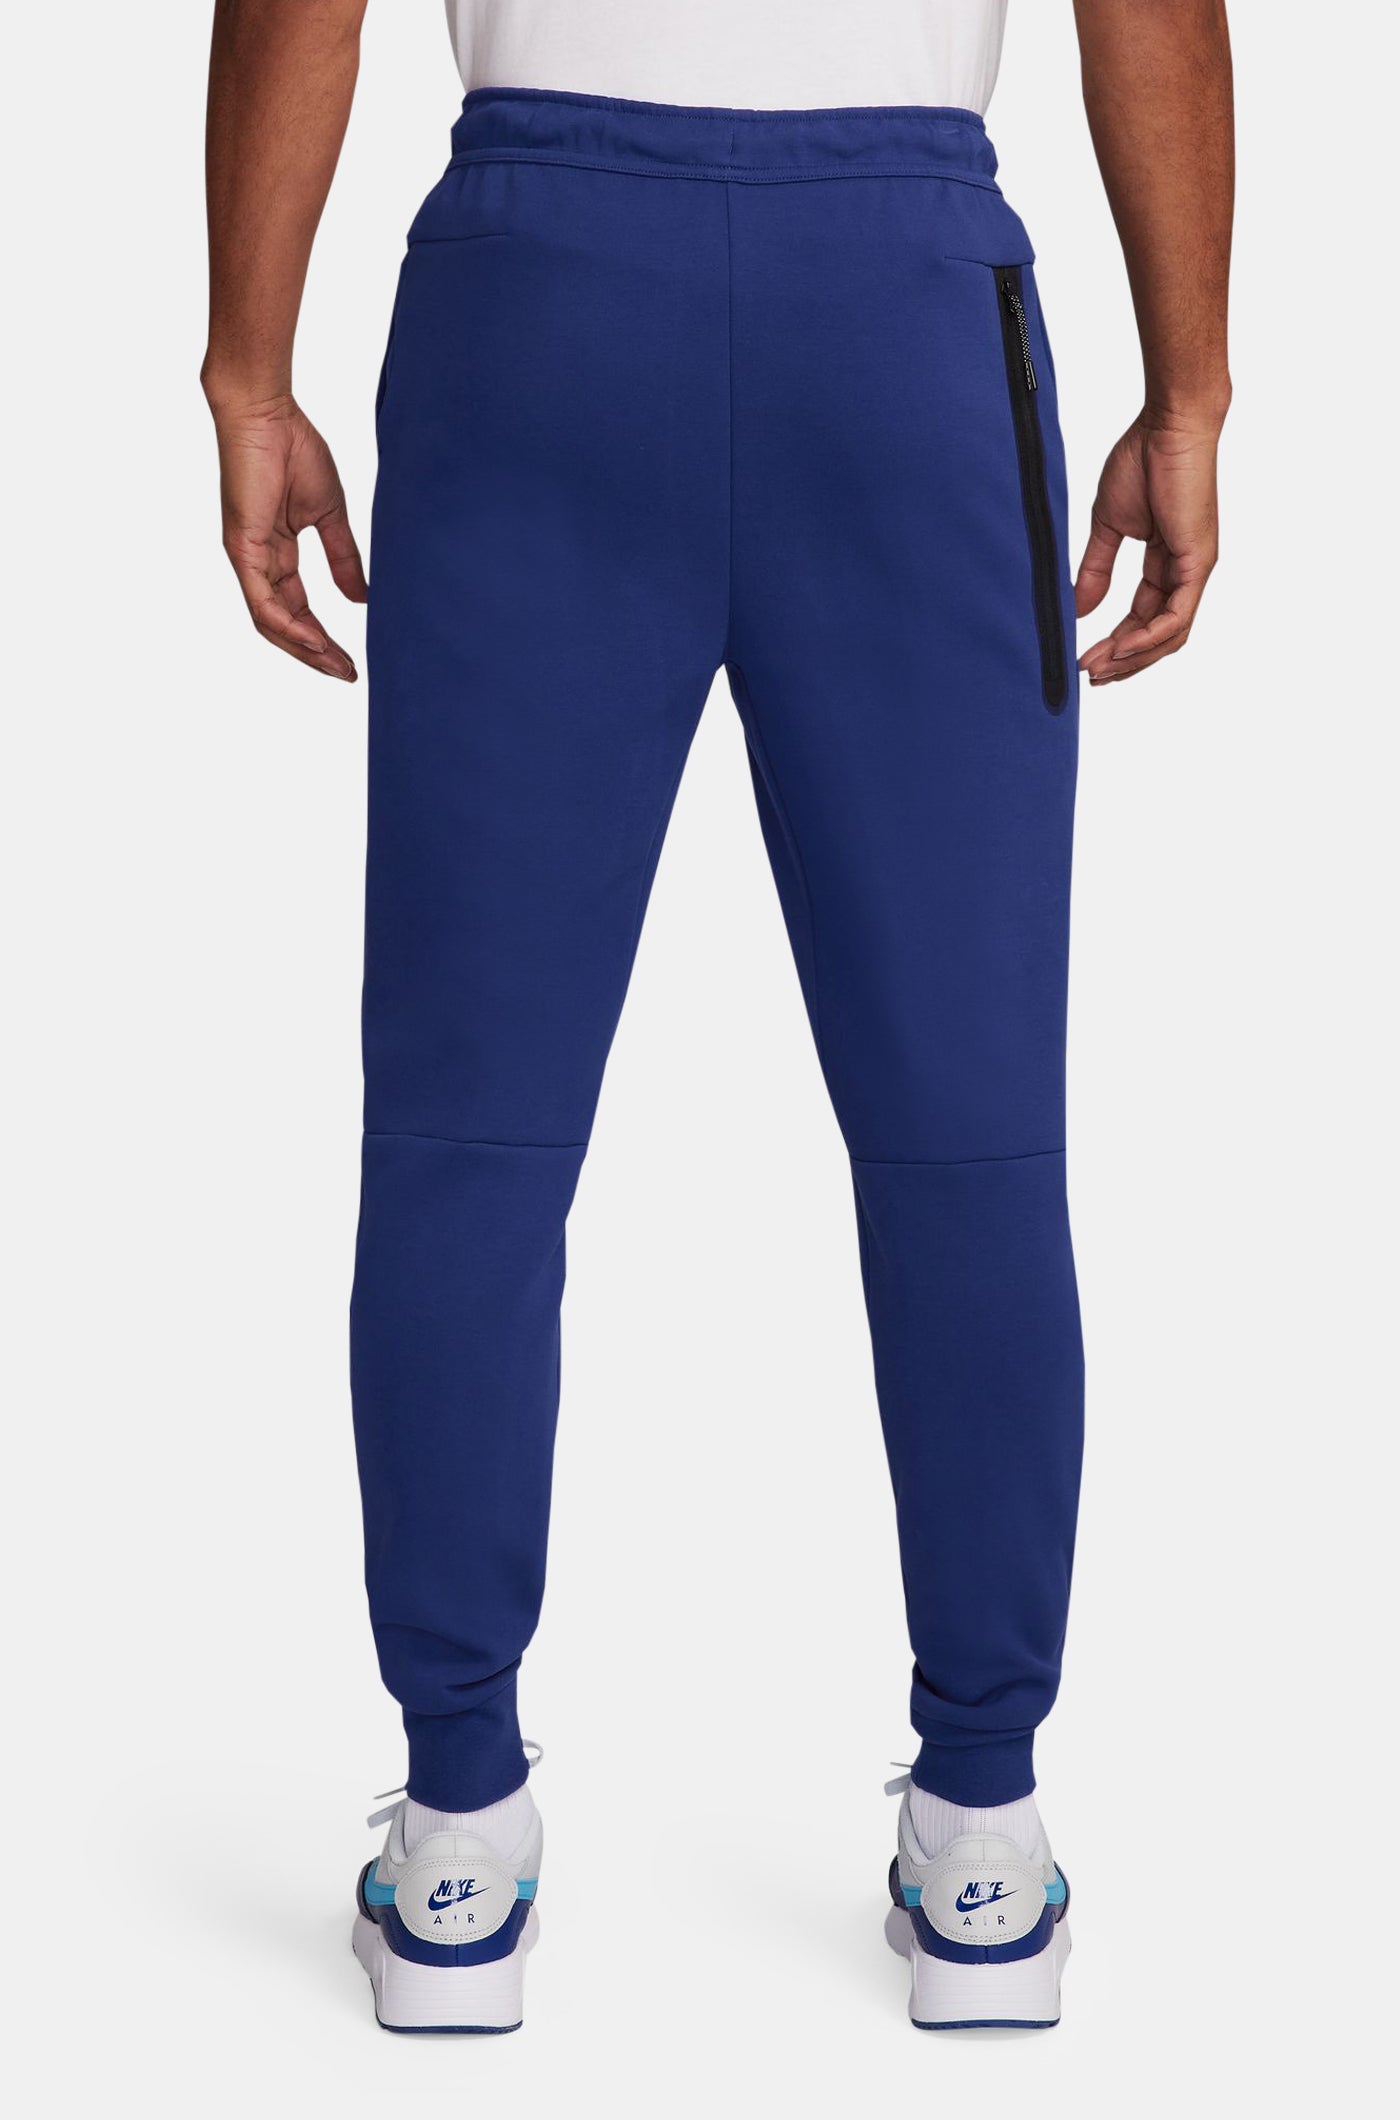  Pantalon tech bleu royal Barça Nike